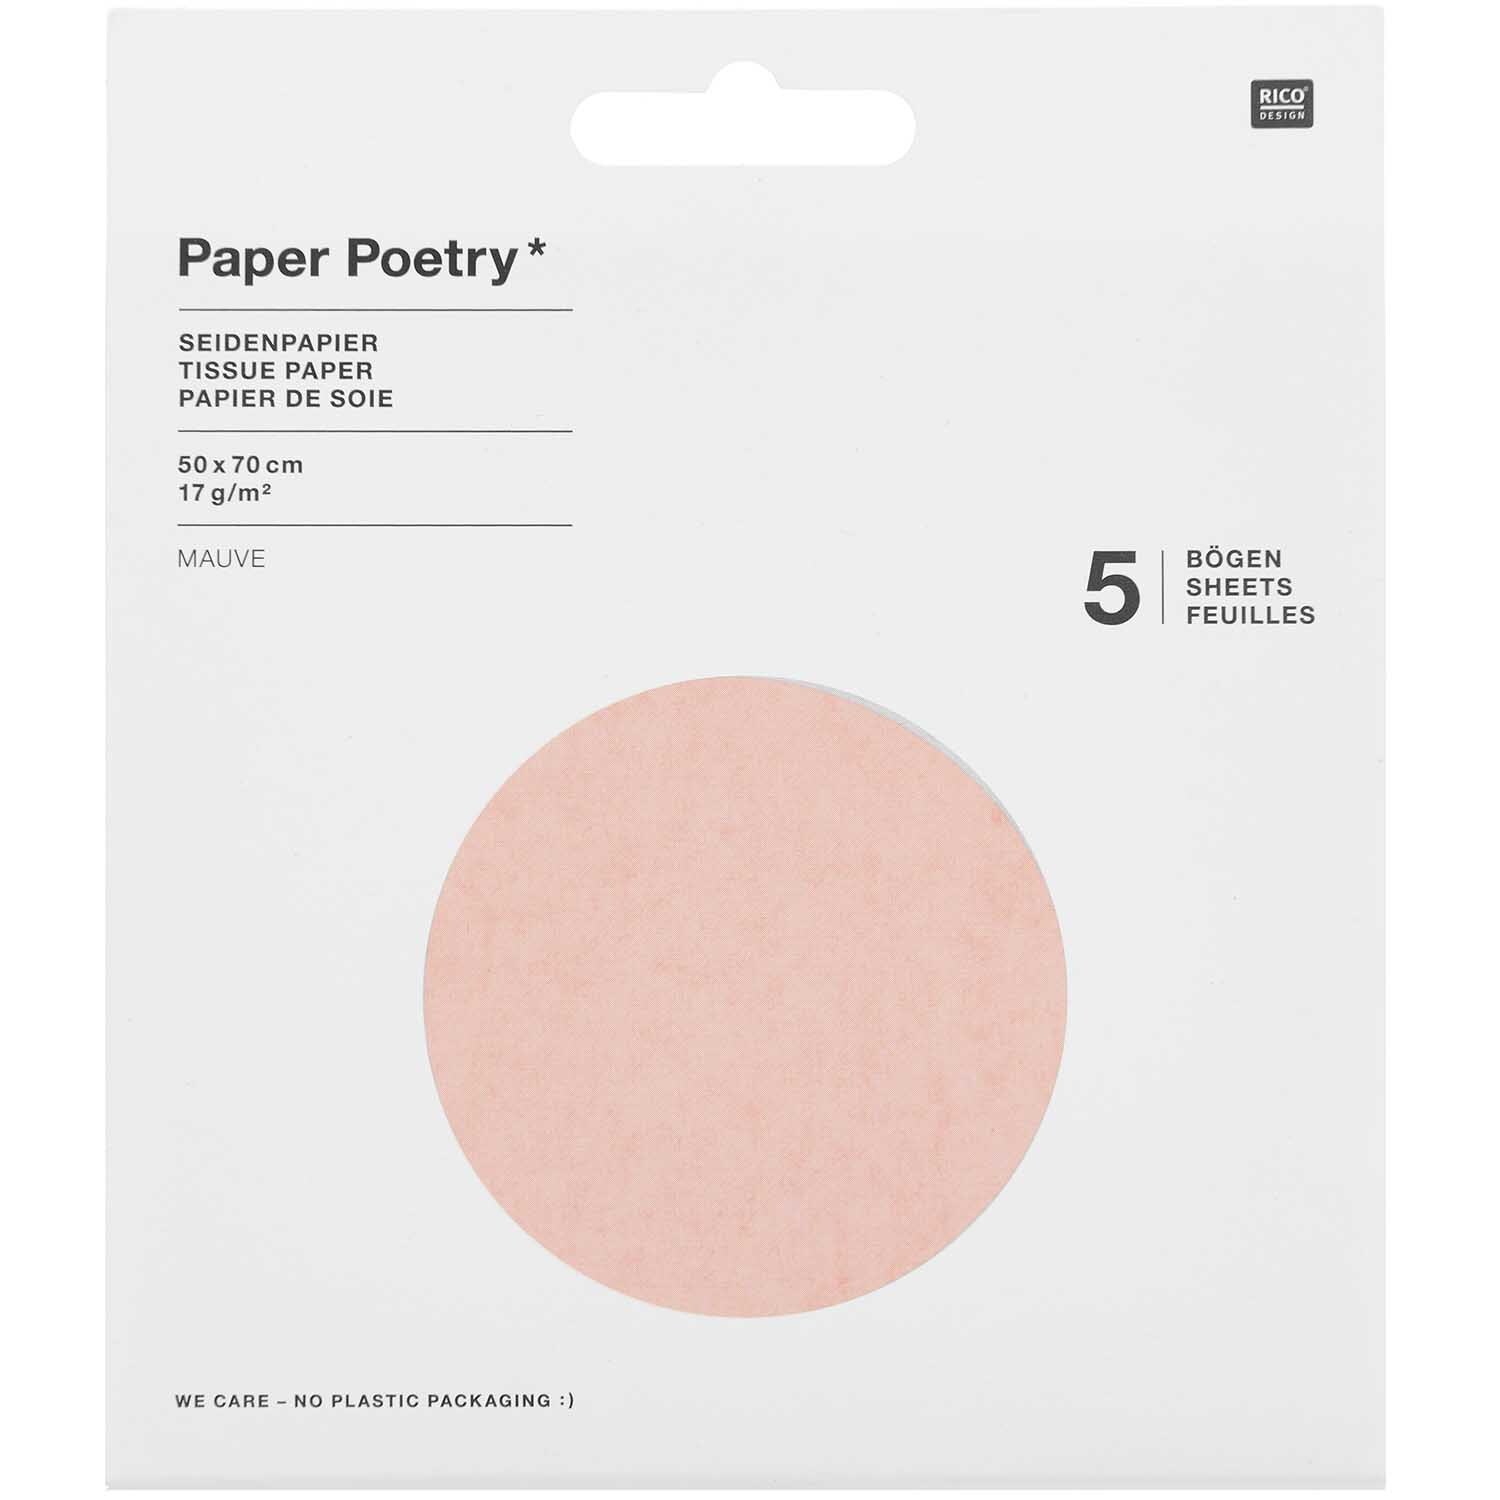 Paper Poetry Seidenpapier 50x70cm 17g/m² 5 Bogen